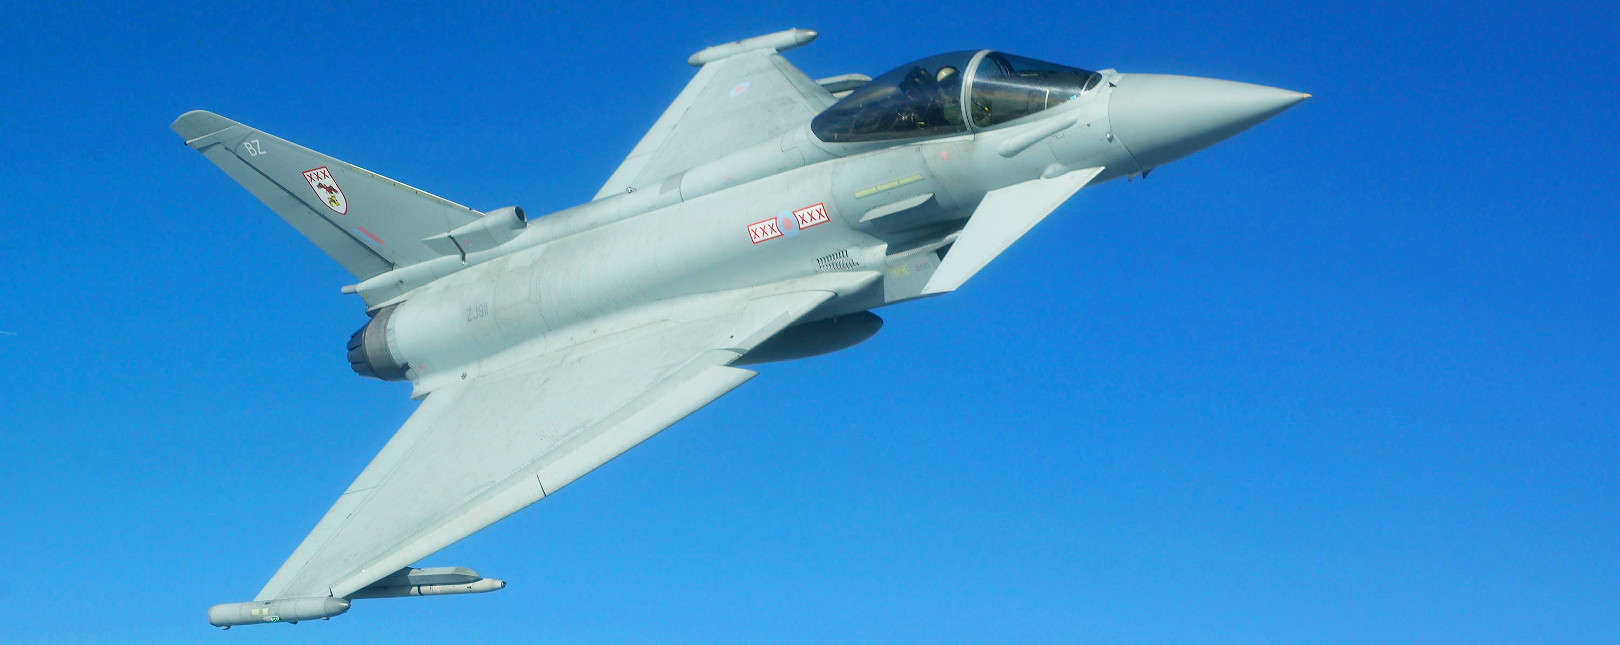 Berlin und Paris wollen zusammen europäischen Kampfjet entwickeln